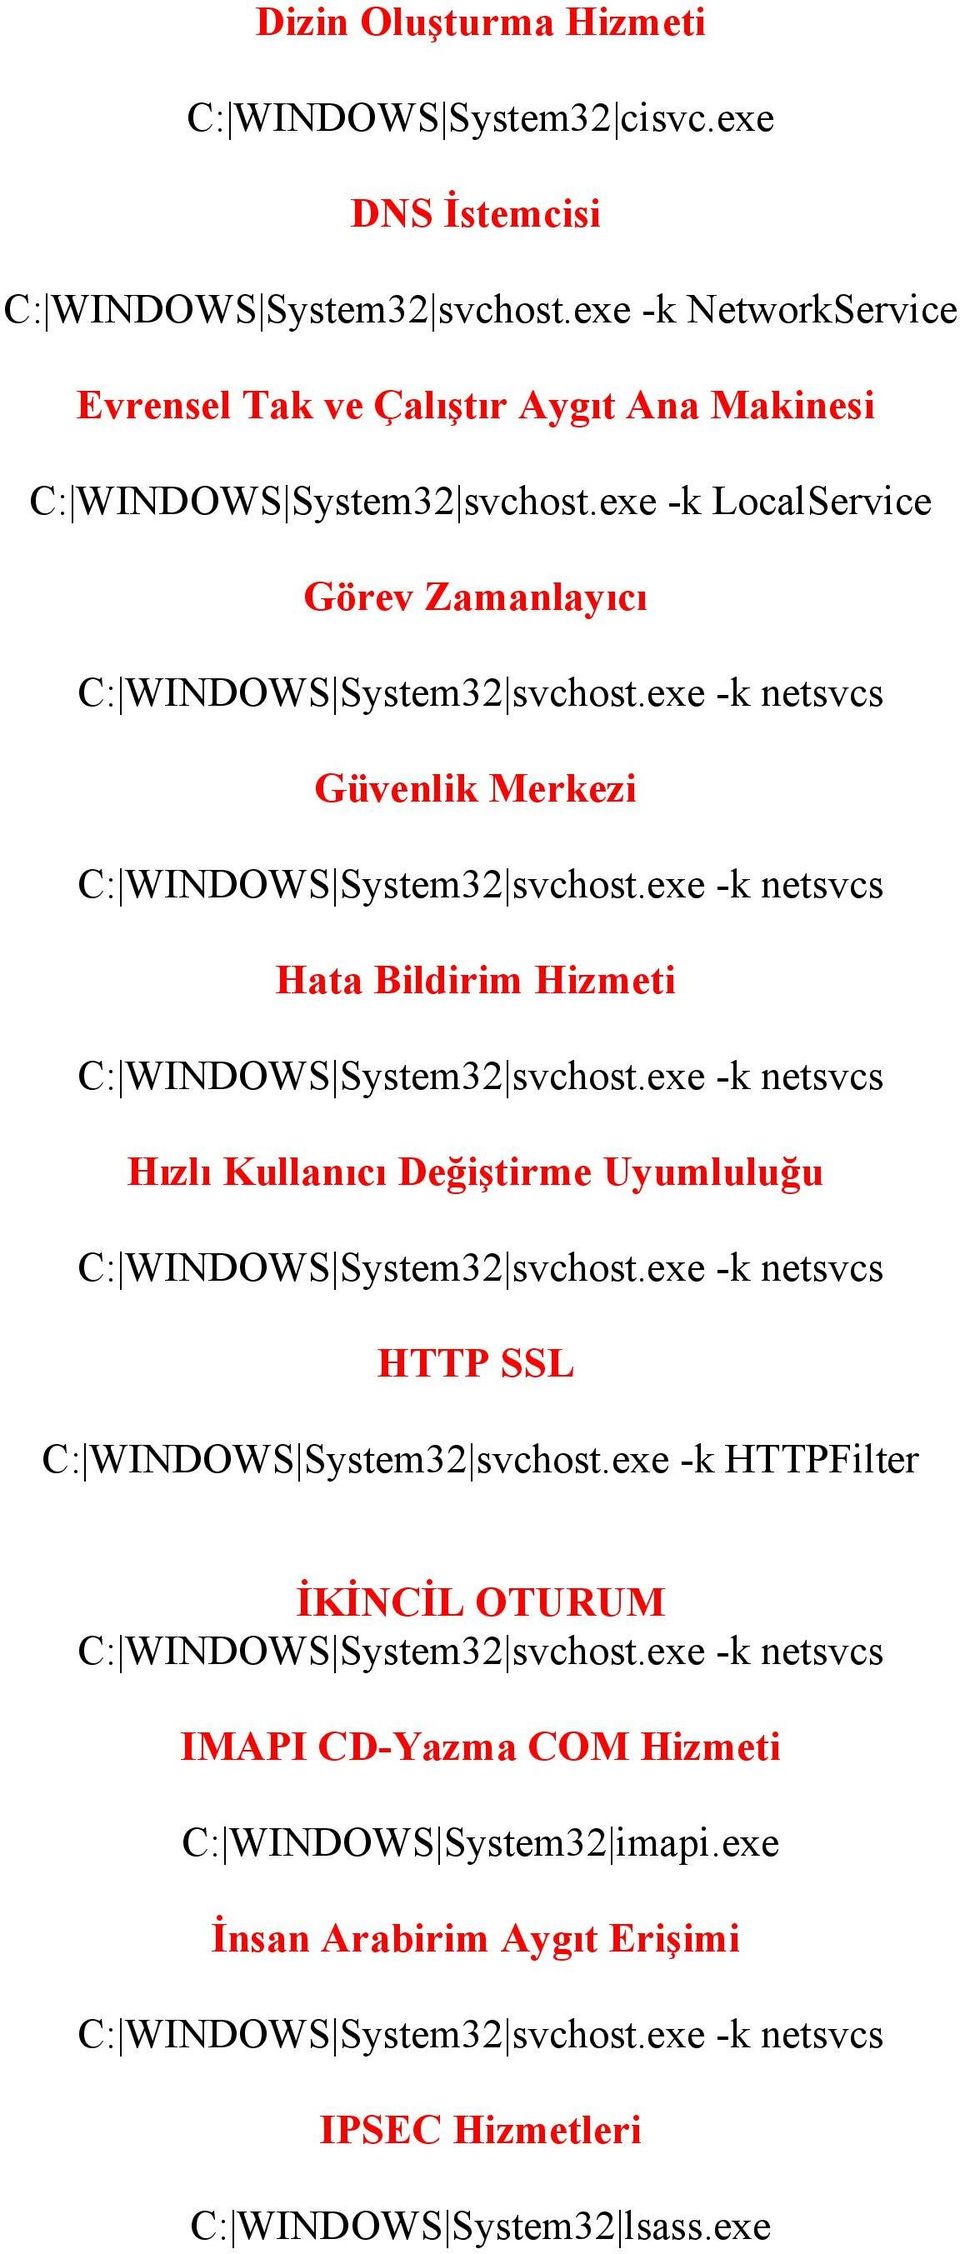 Hizmeti Hızlı Kullanıcı Değiştirme Uyumluluğu HTTP SSL C: WINDOWS System32 svchost.